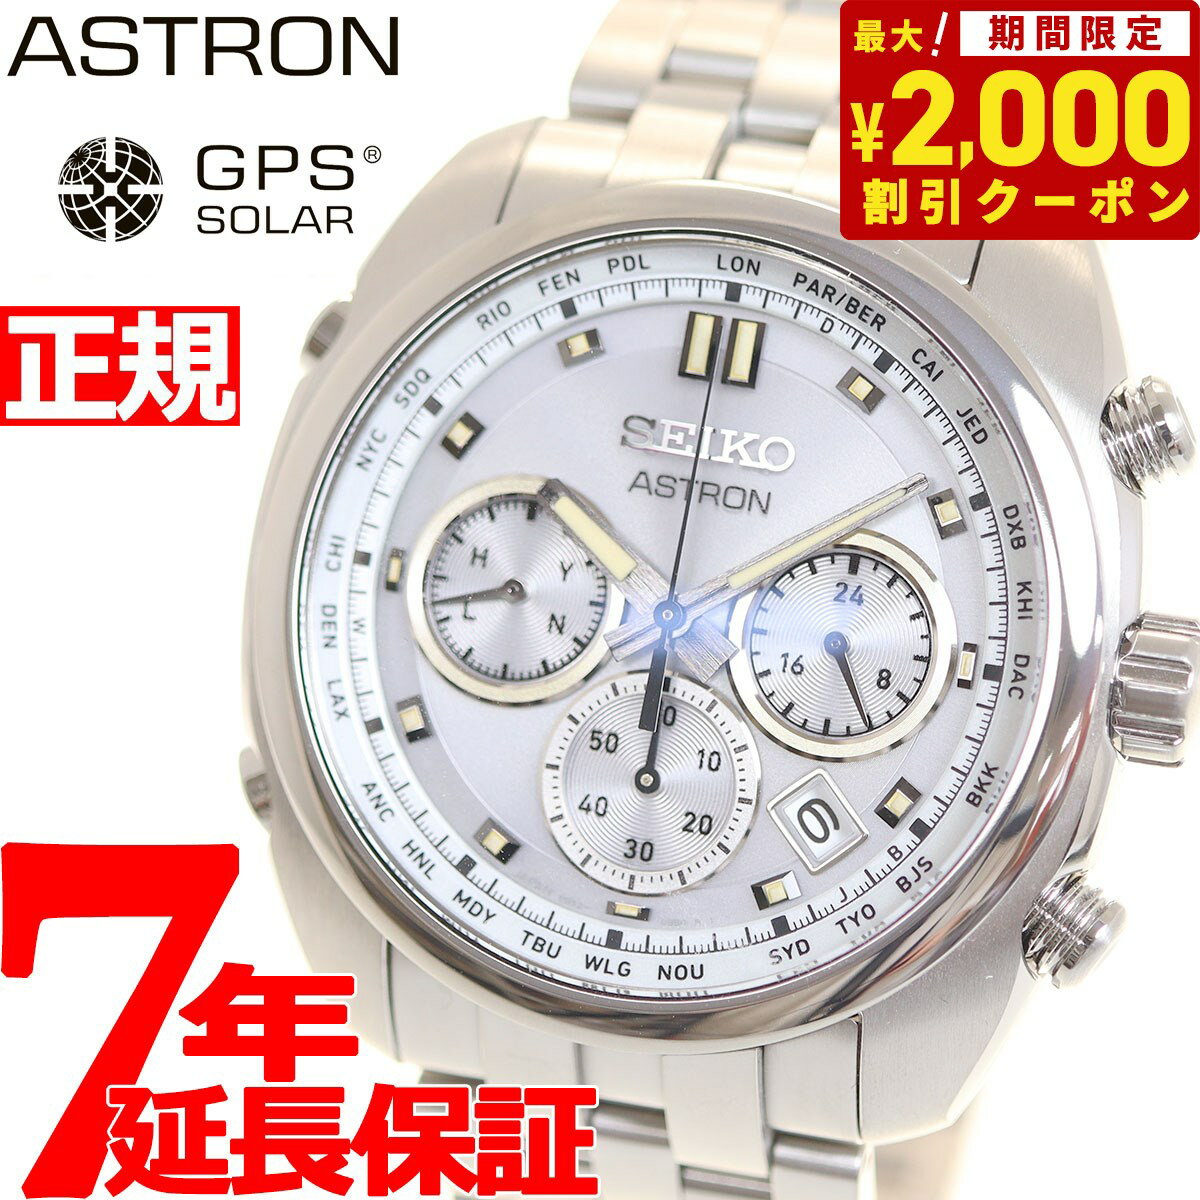 セイコー アストロン SEIKO ASTRON ソーラー電波ライン オリジンシリーズ 電波時計 腕時計 メンズ SBXY025 ORIGIN